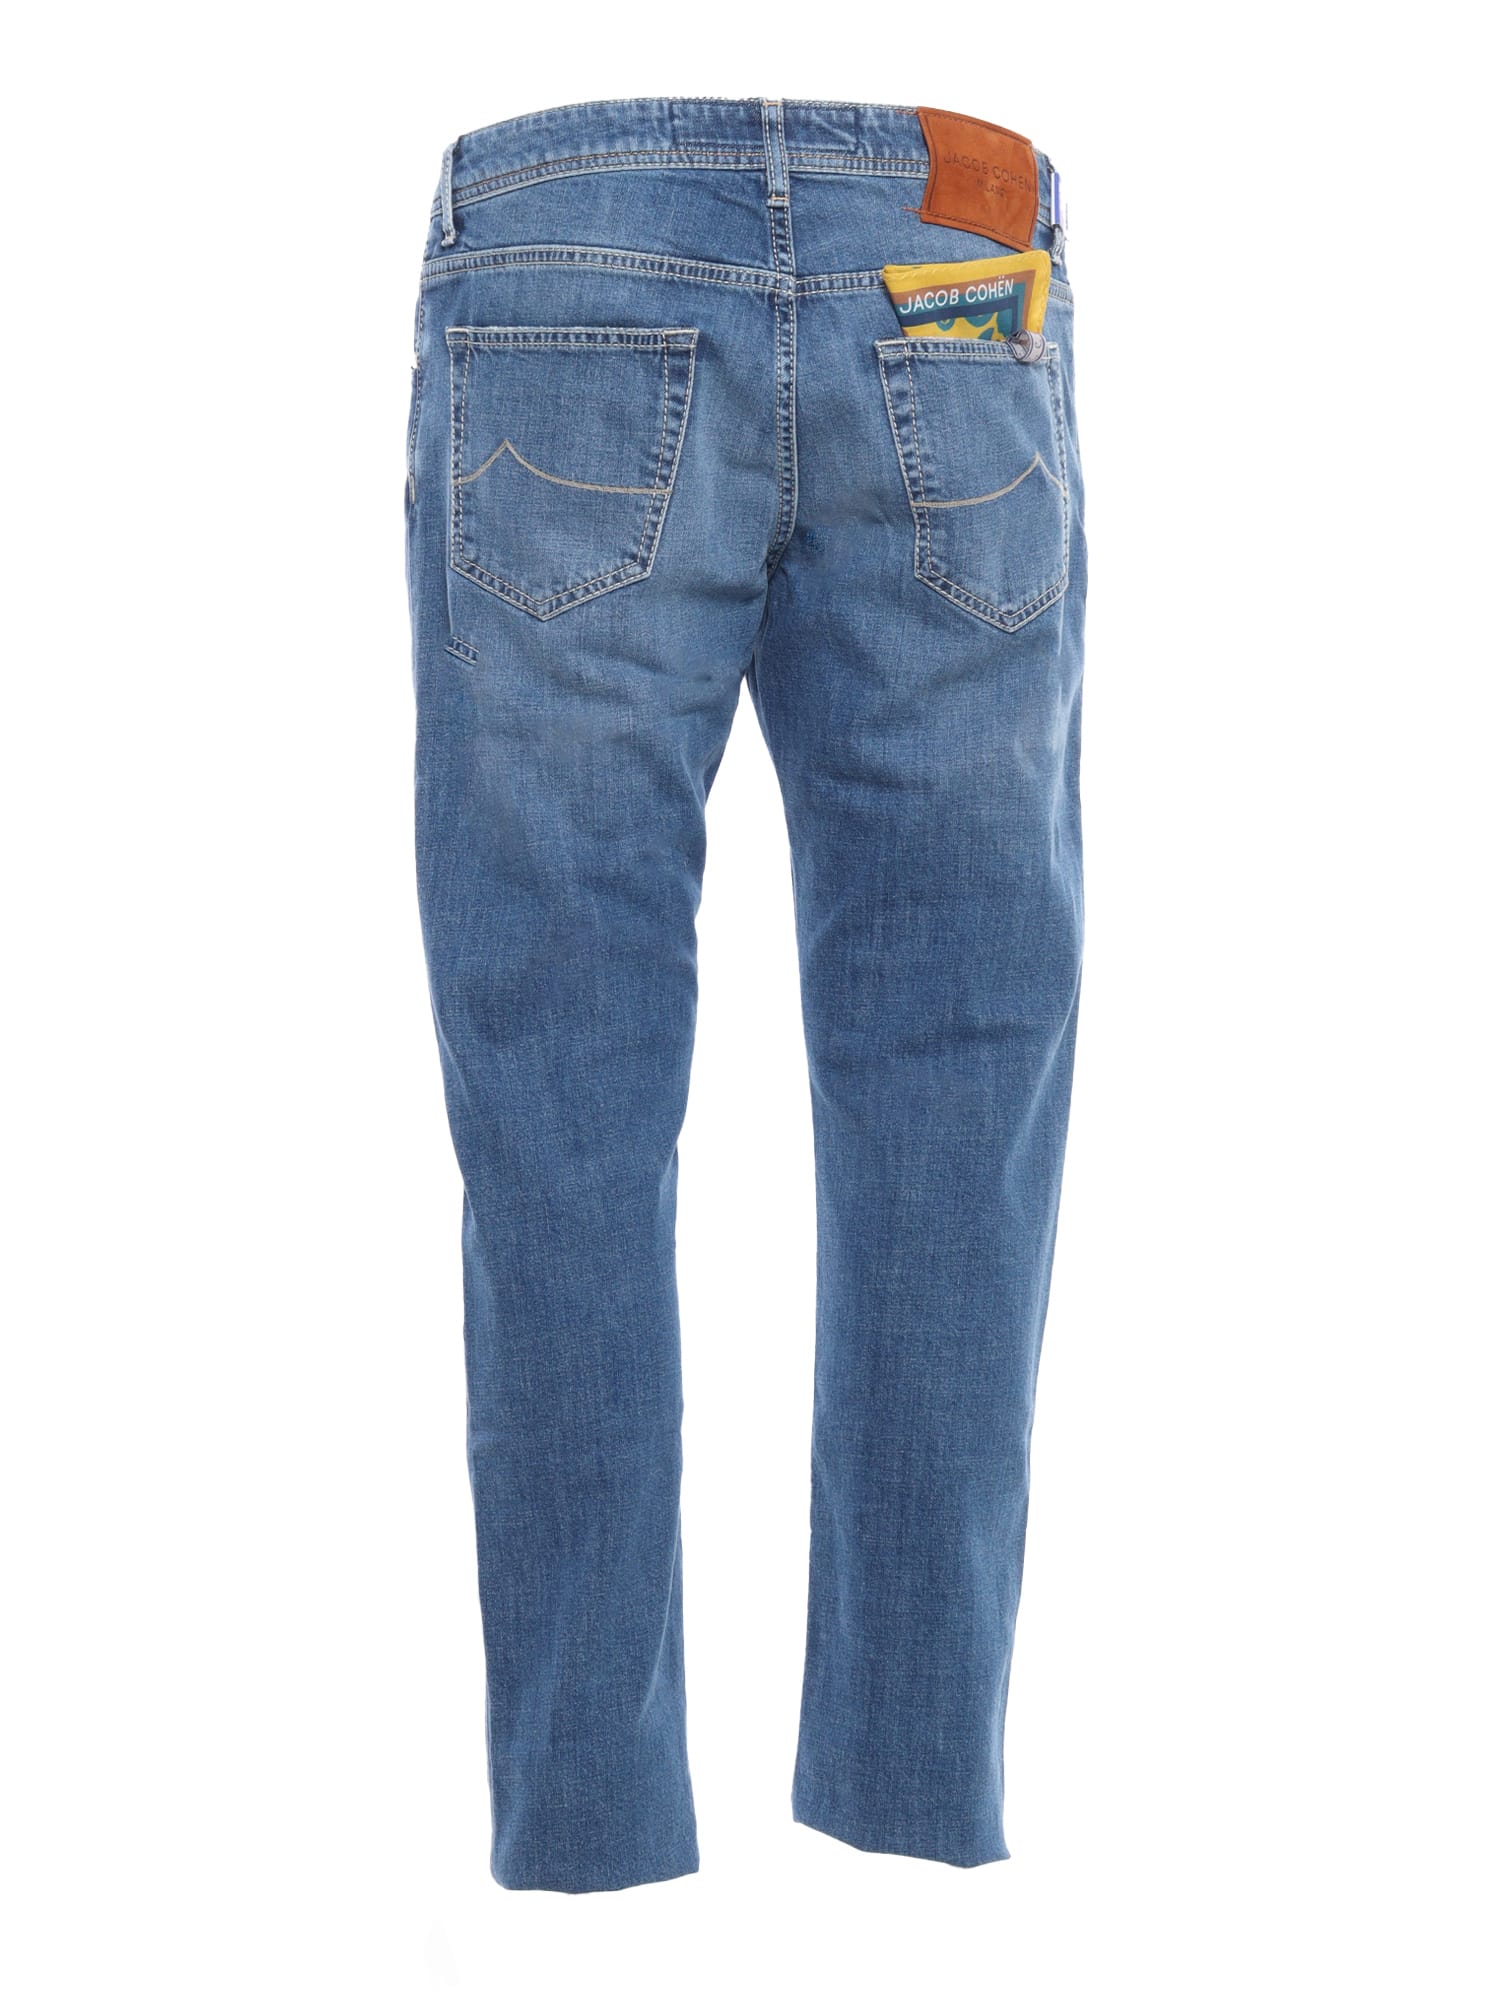 Shop Jacob Cohen Blue Jeans